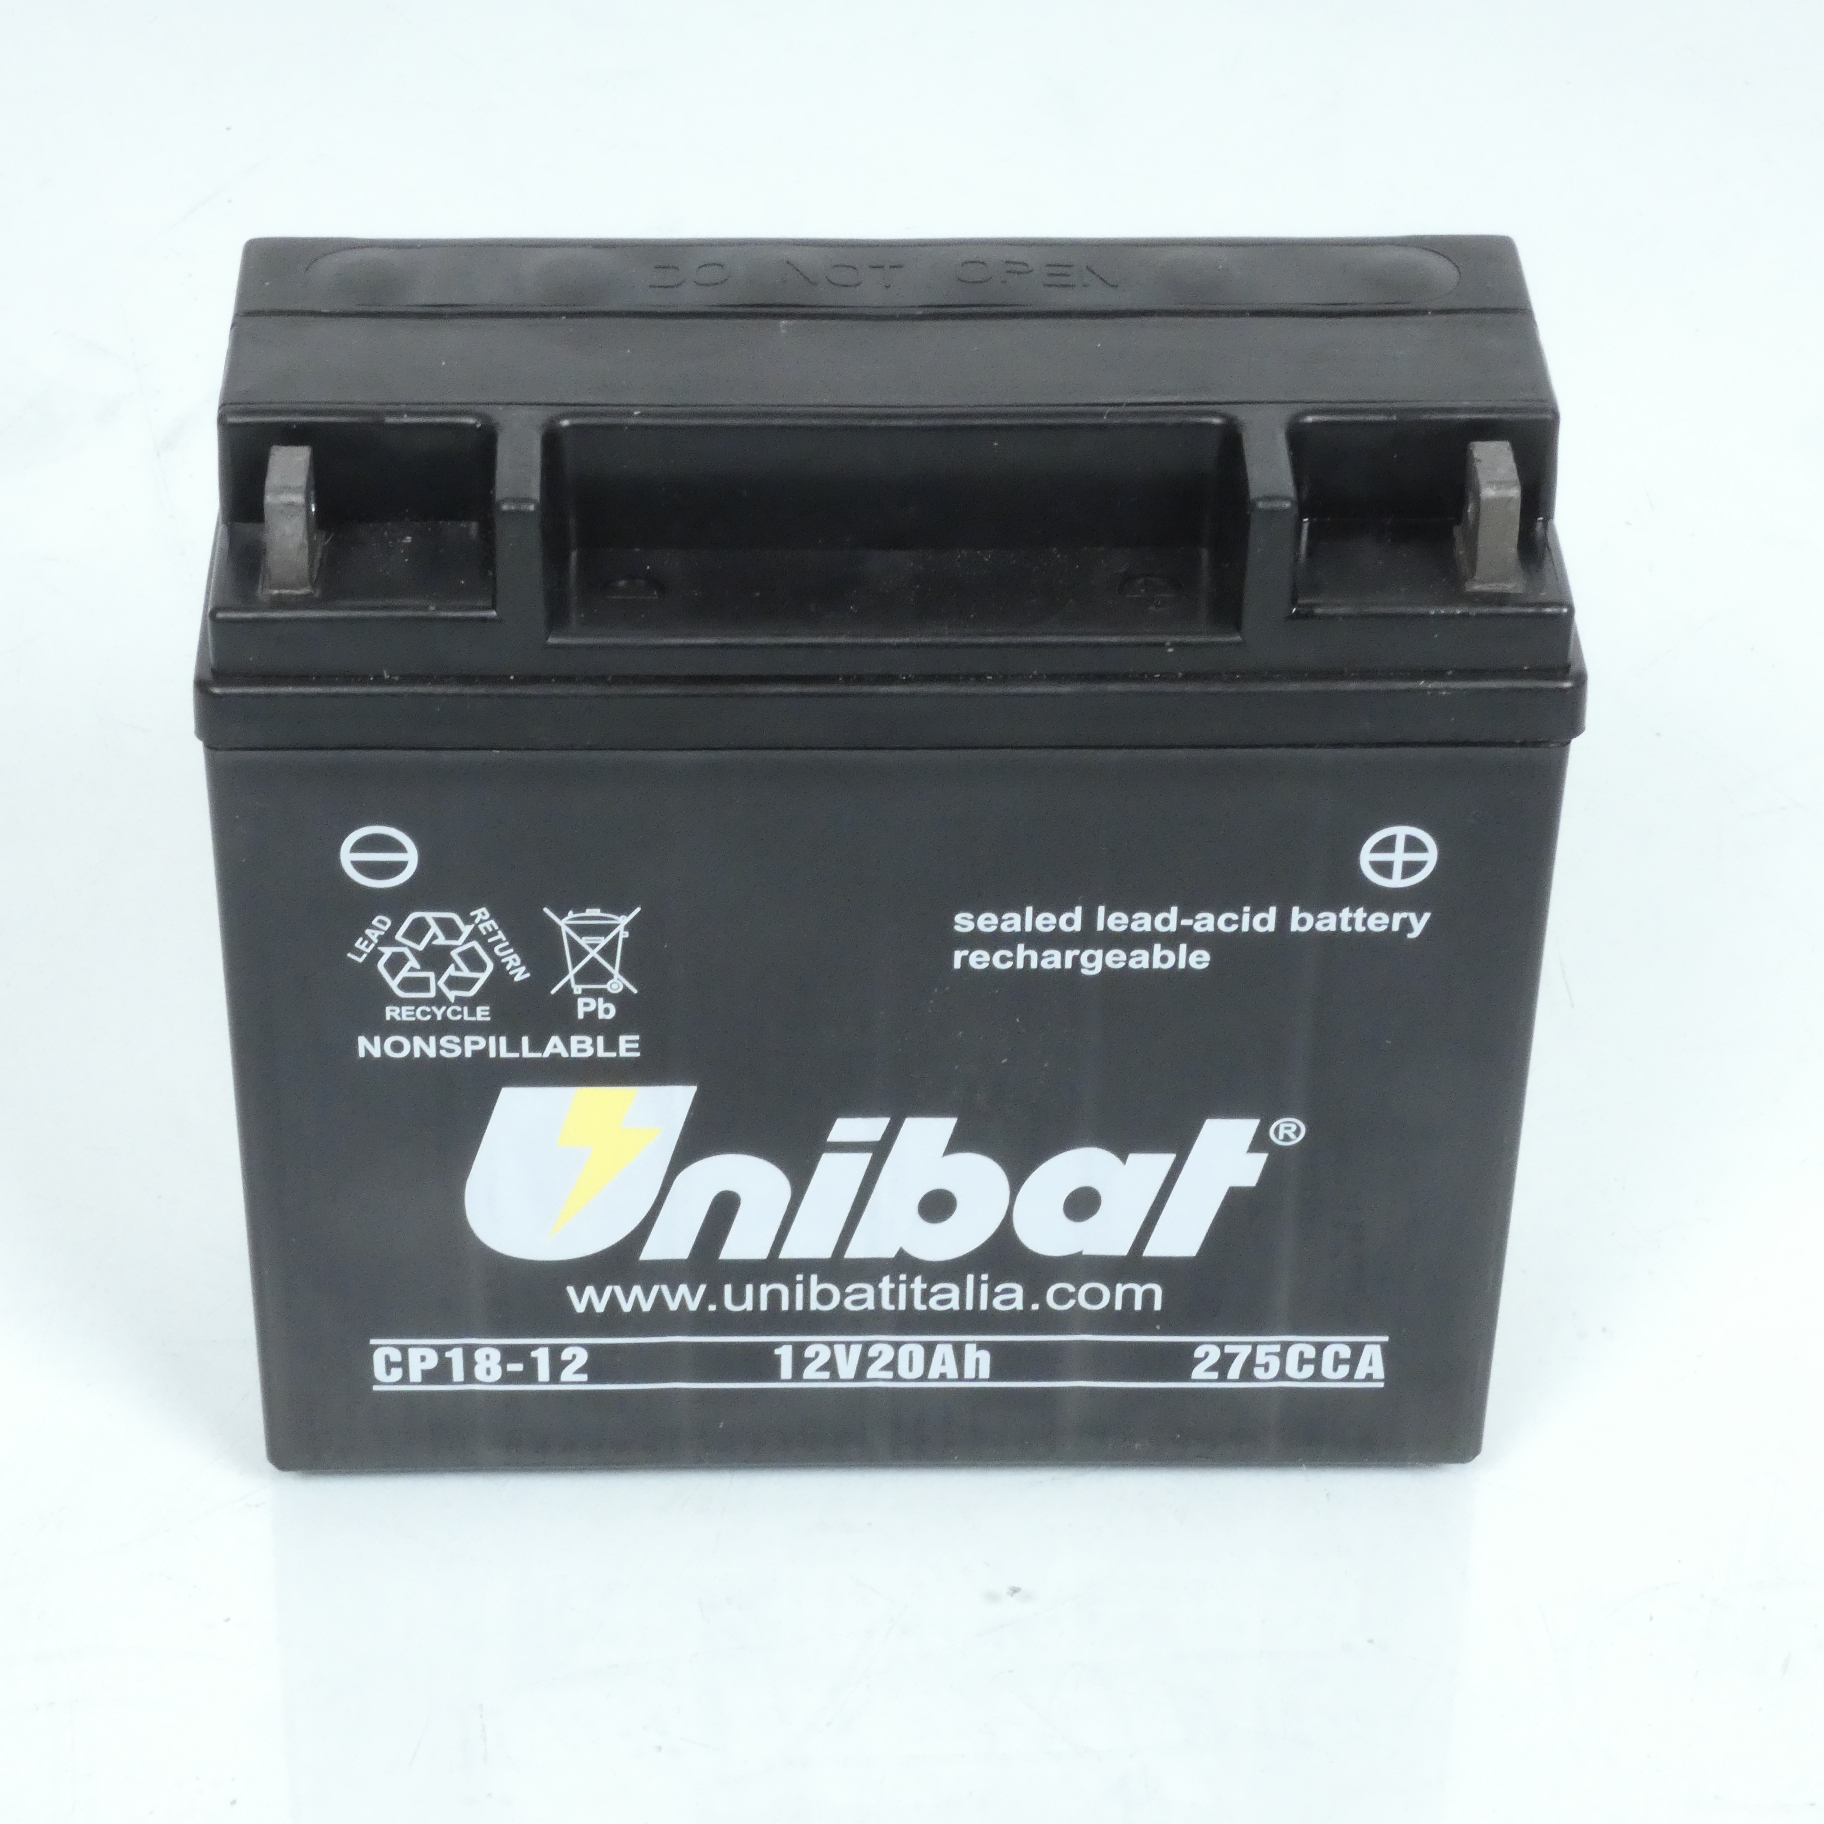 Batterie Unibat pour moto BMW 650 1982 à 1985 CP18-12 / 12V 20Ah 275CCA Neuf